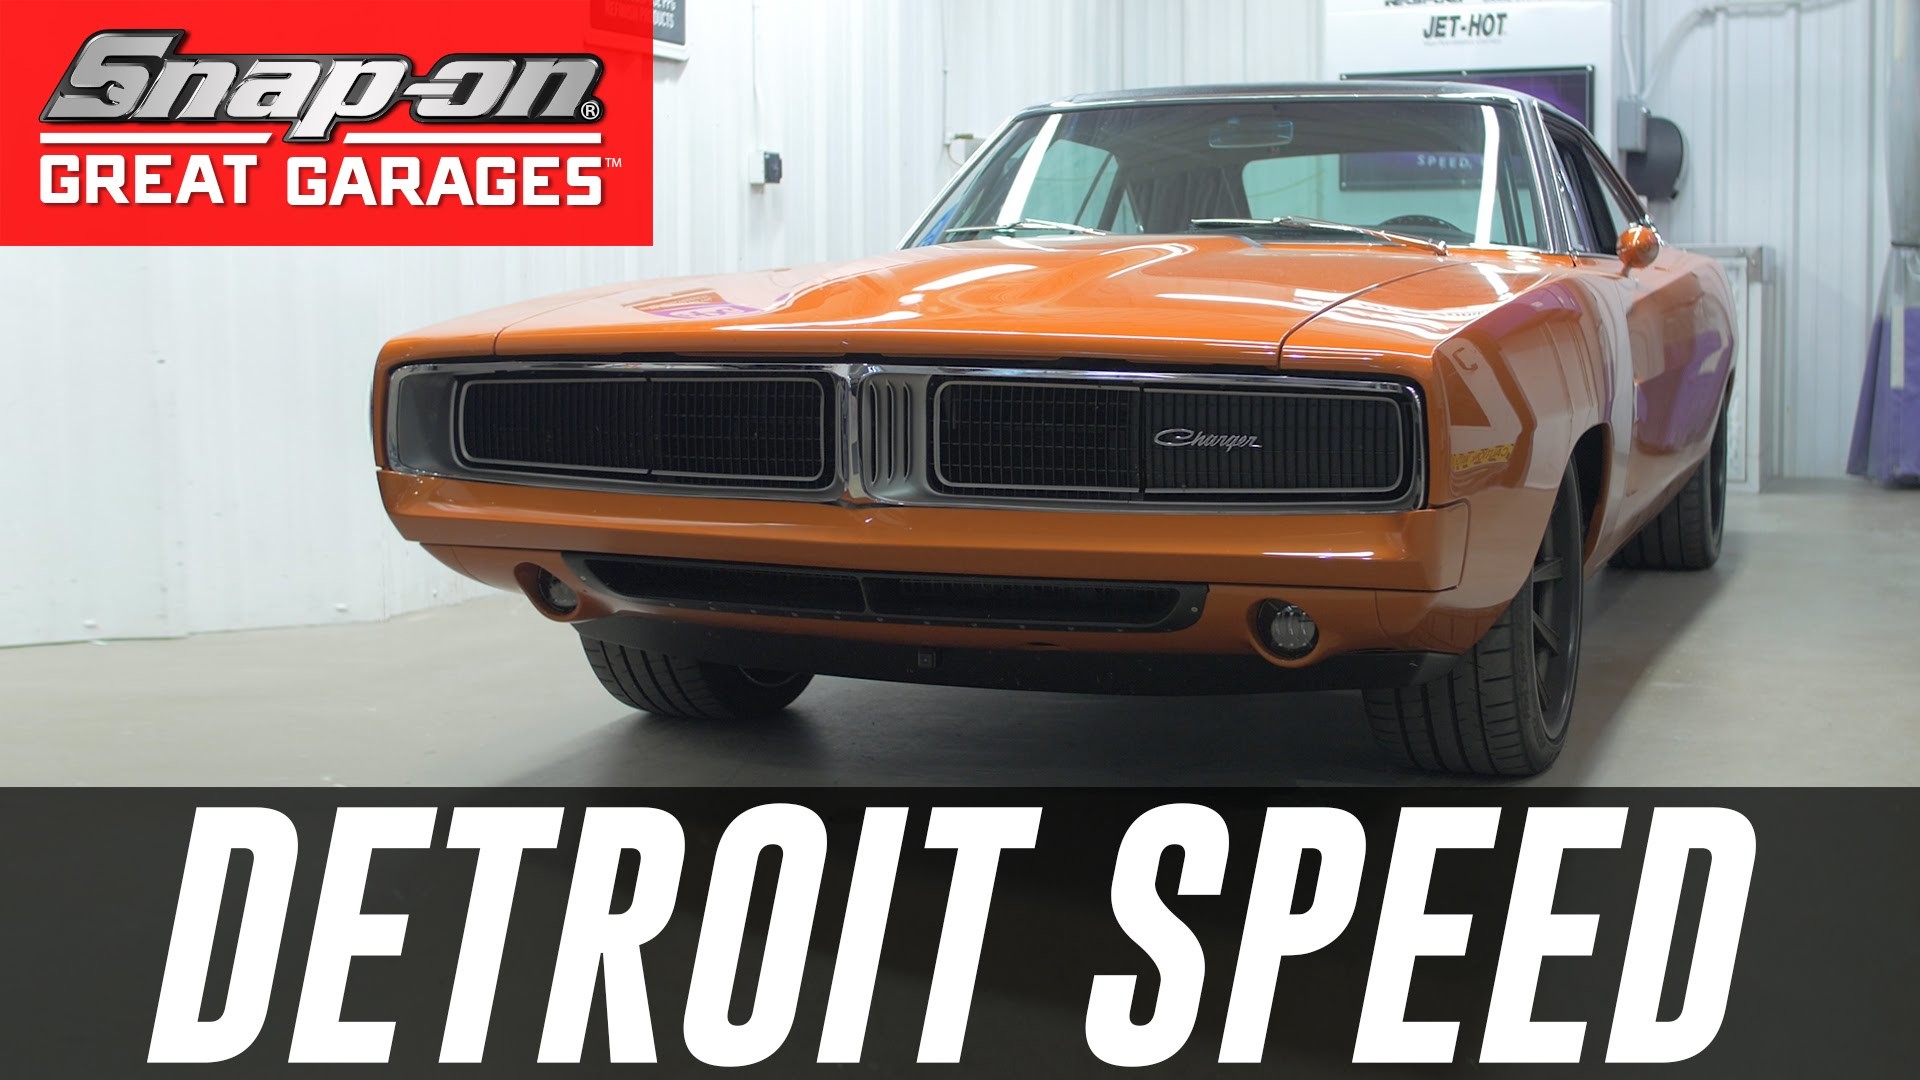 1920x1080 Behind the Garage of Detroit Speed: Snap-on Great Garagesâ¢ | Snap-on Tools